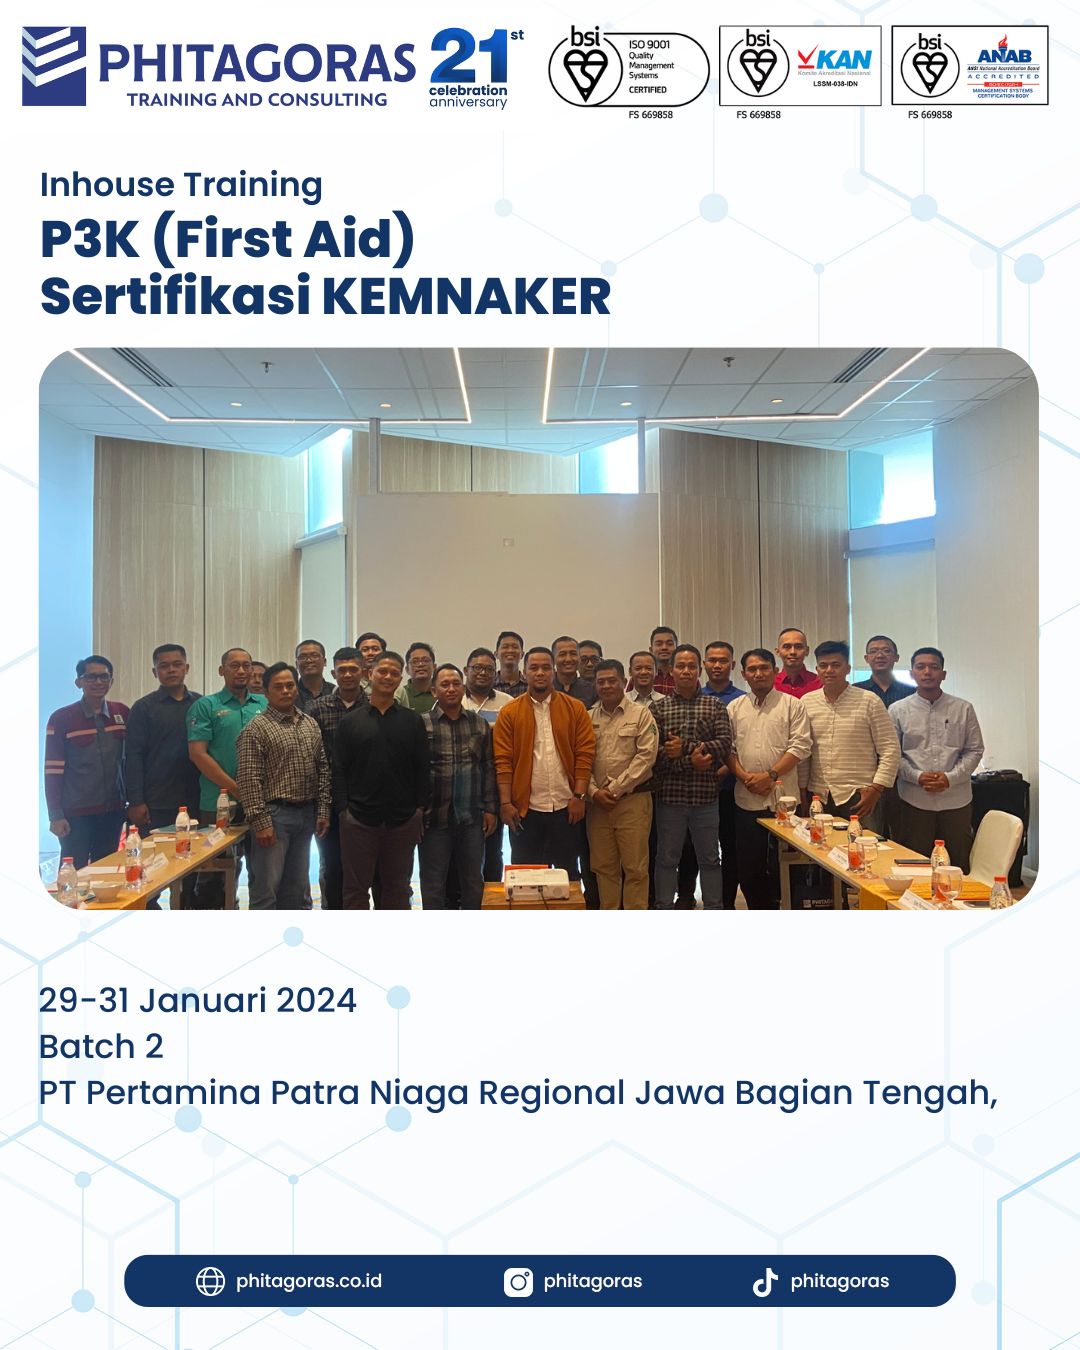 Inhouse Training P3K (First Aid) Sertifikasi KEMNAKER - PT Pertamina Patra Niaga Regional Jawa Bagian Tengah Batch 2